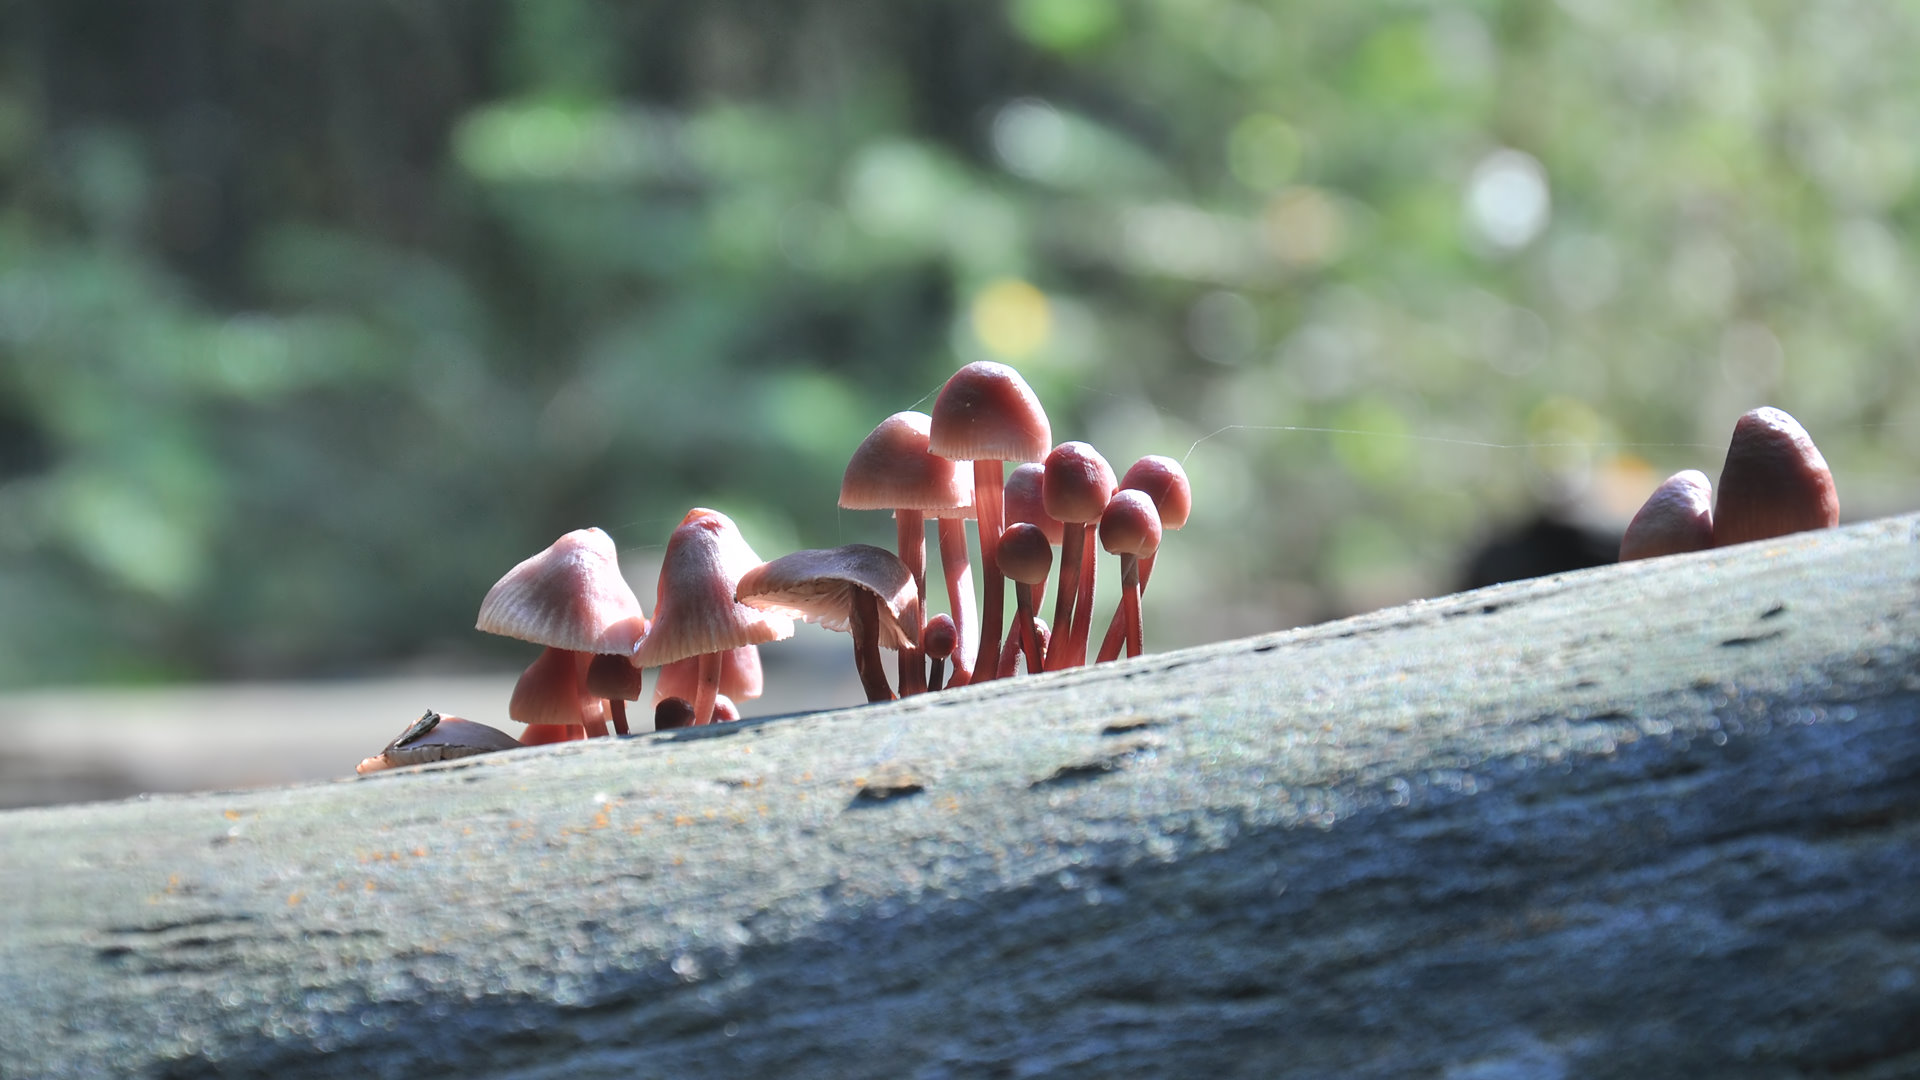 Mushrooms (8)